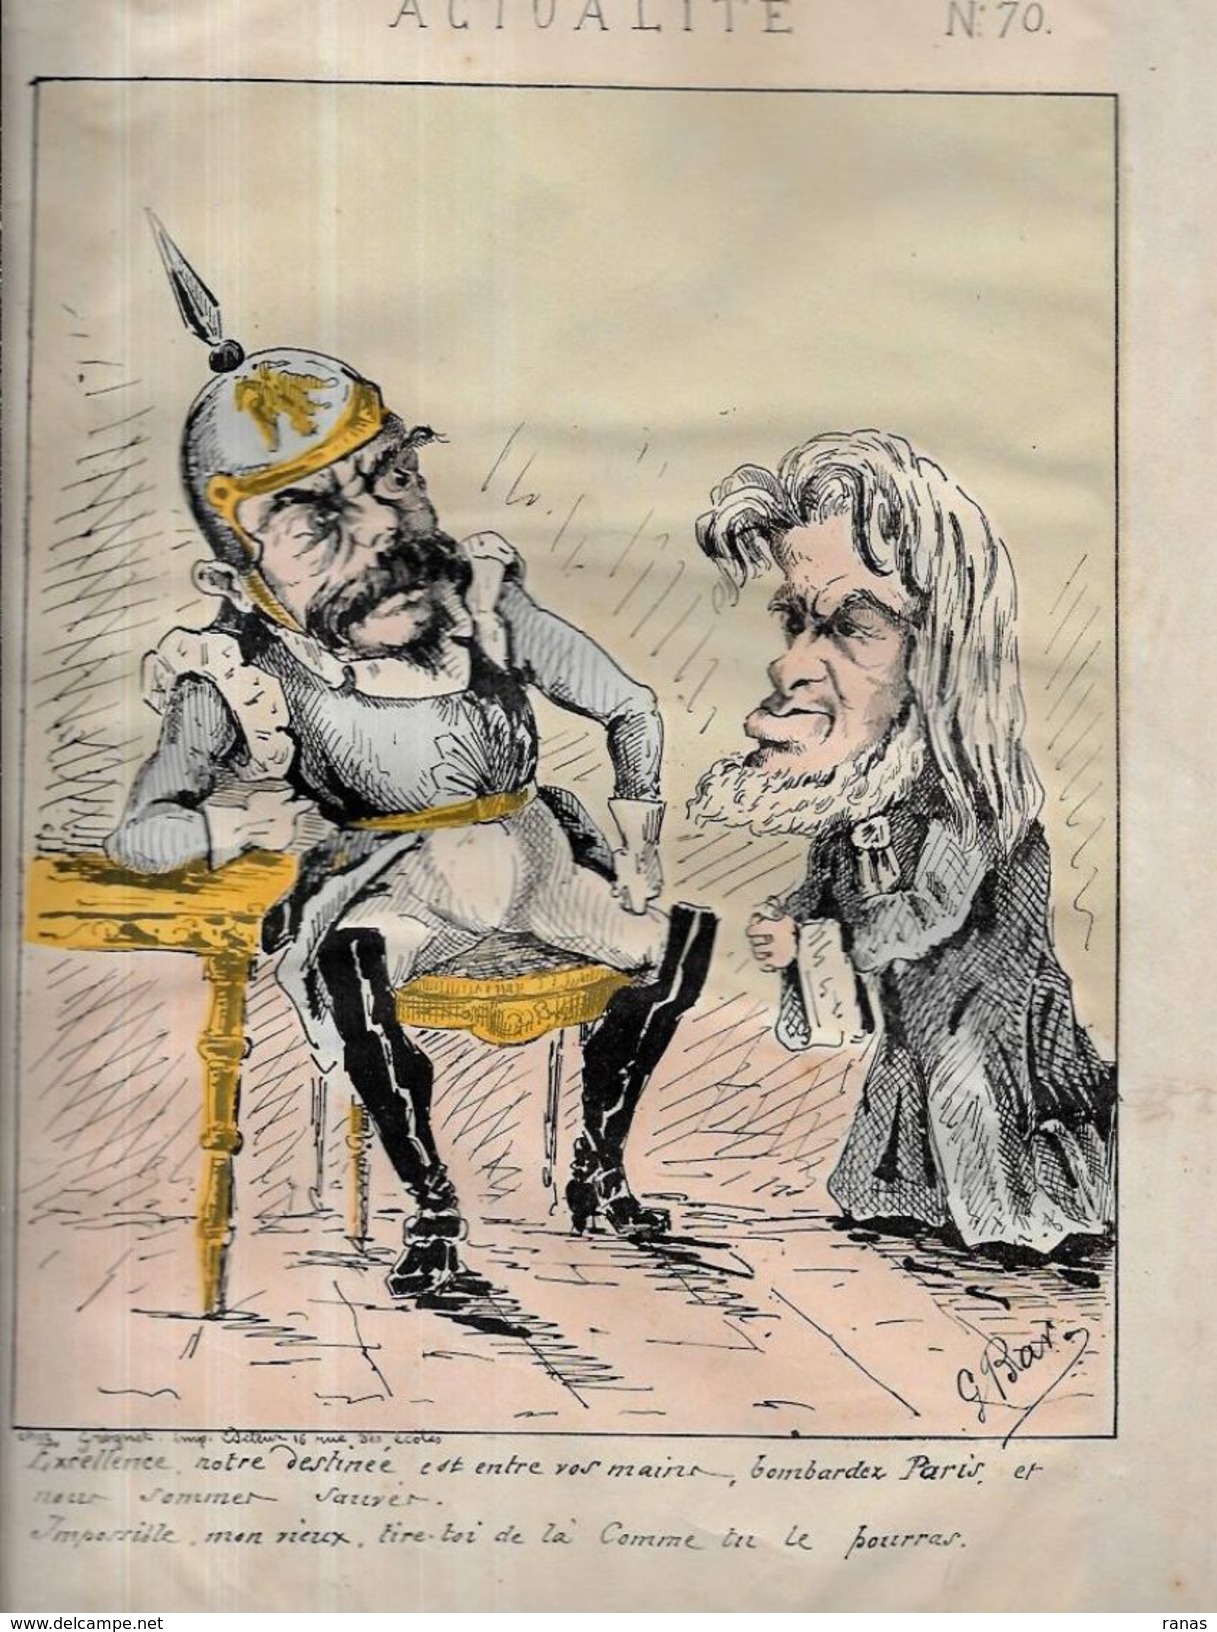 Estampe Gravure Satirique Caricature D'époque 1870 Bismarck Favre - Prints & Engravings